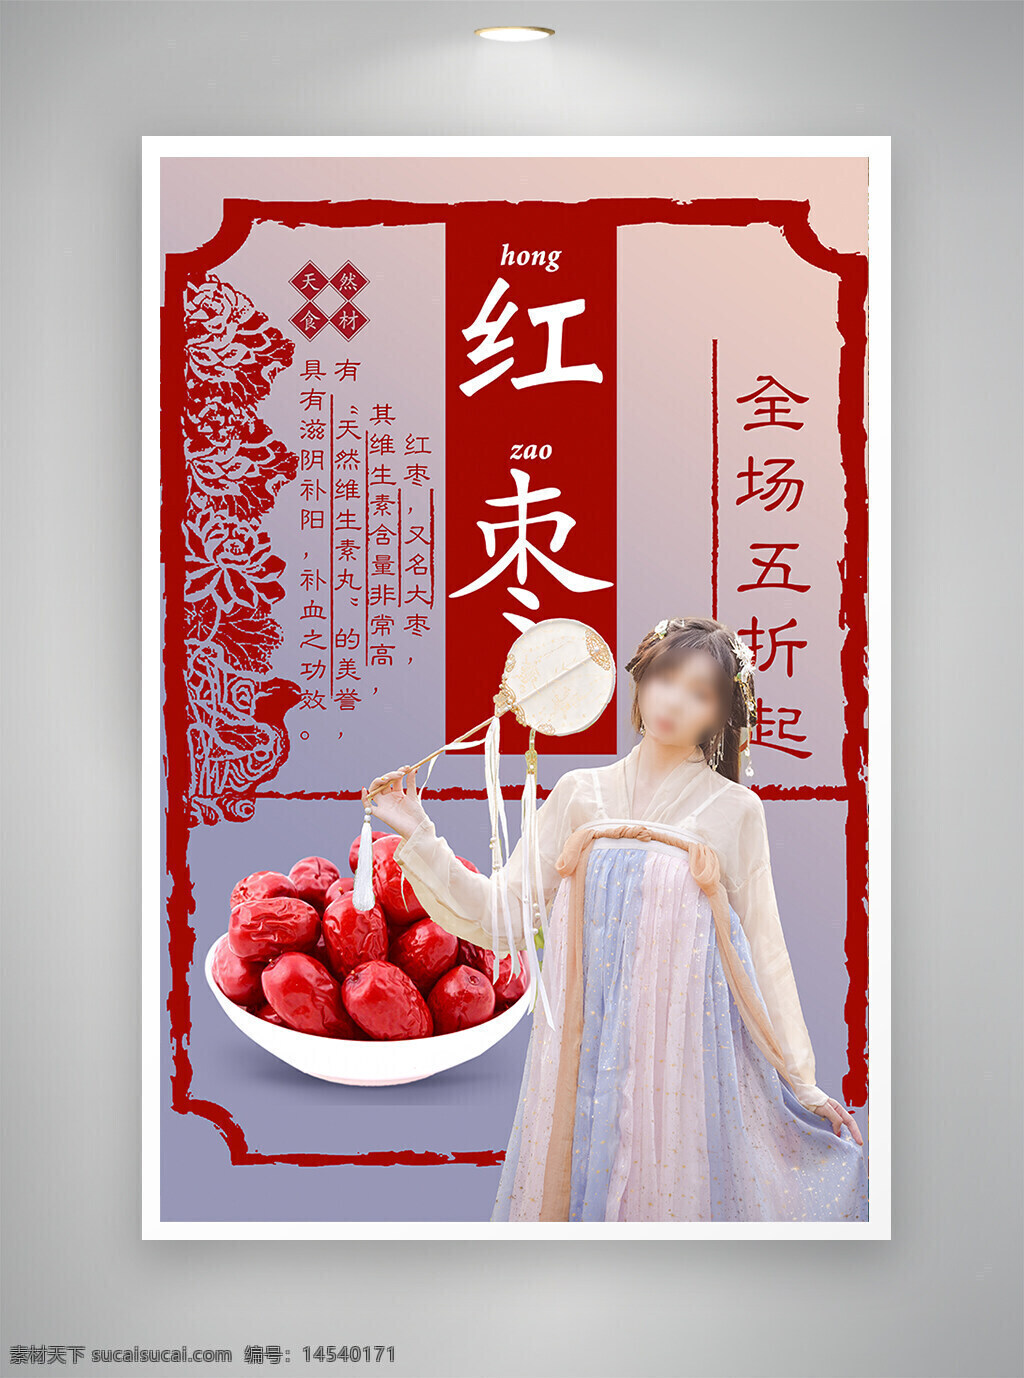 中国风海报 古风海报 促销海报 节日海报 红枣海报